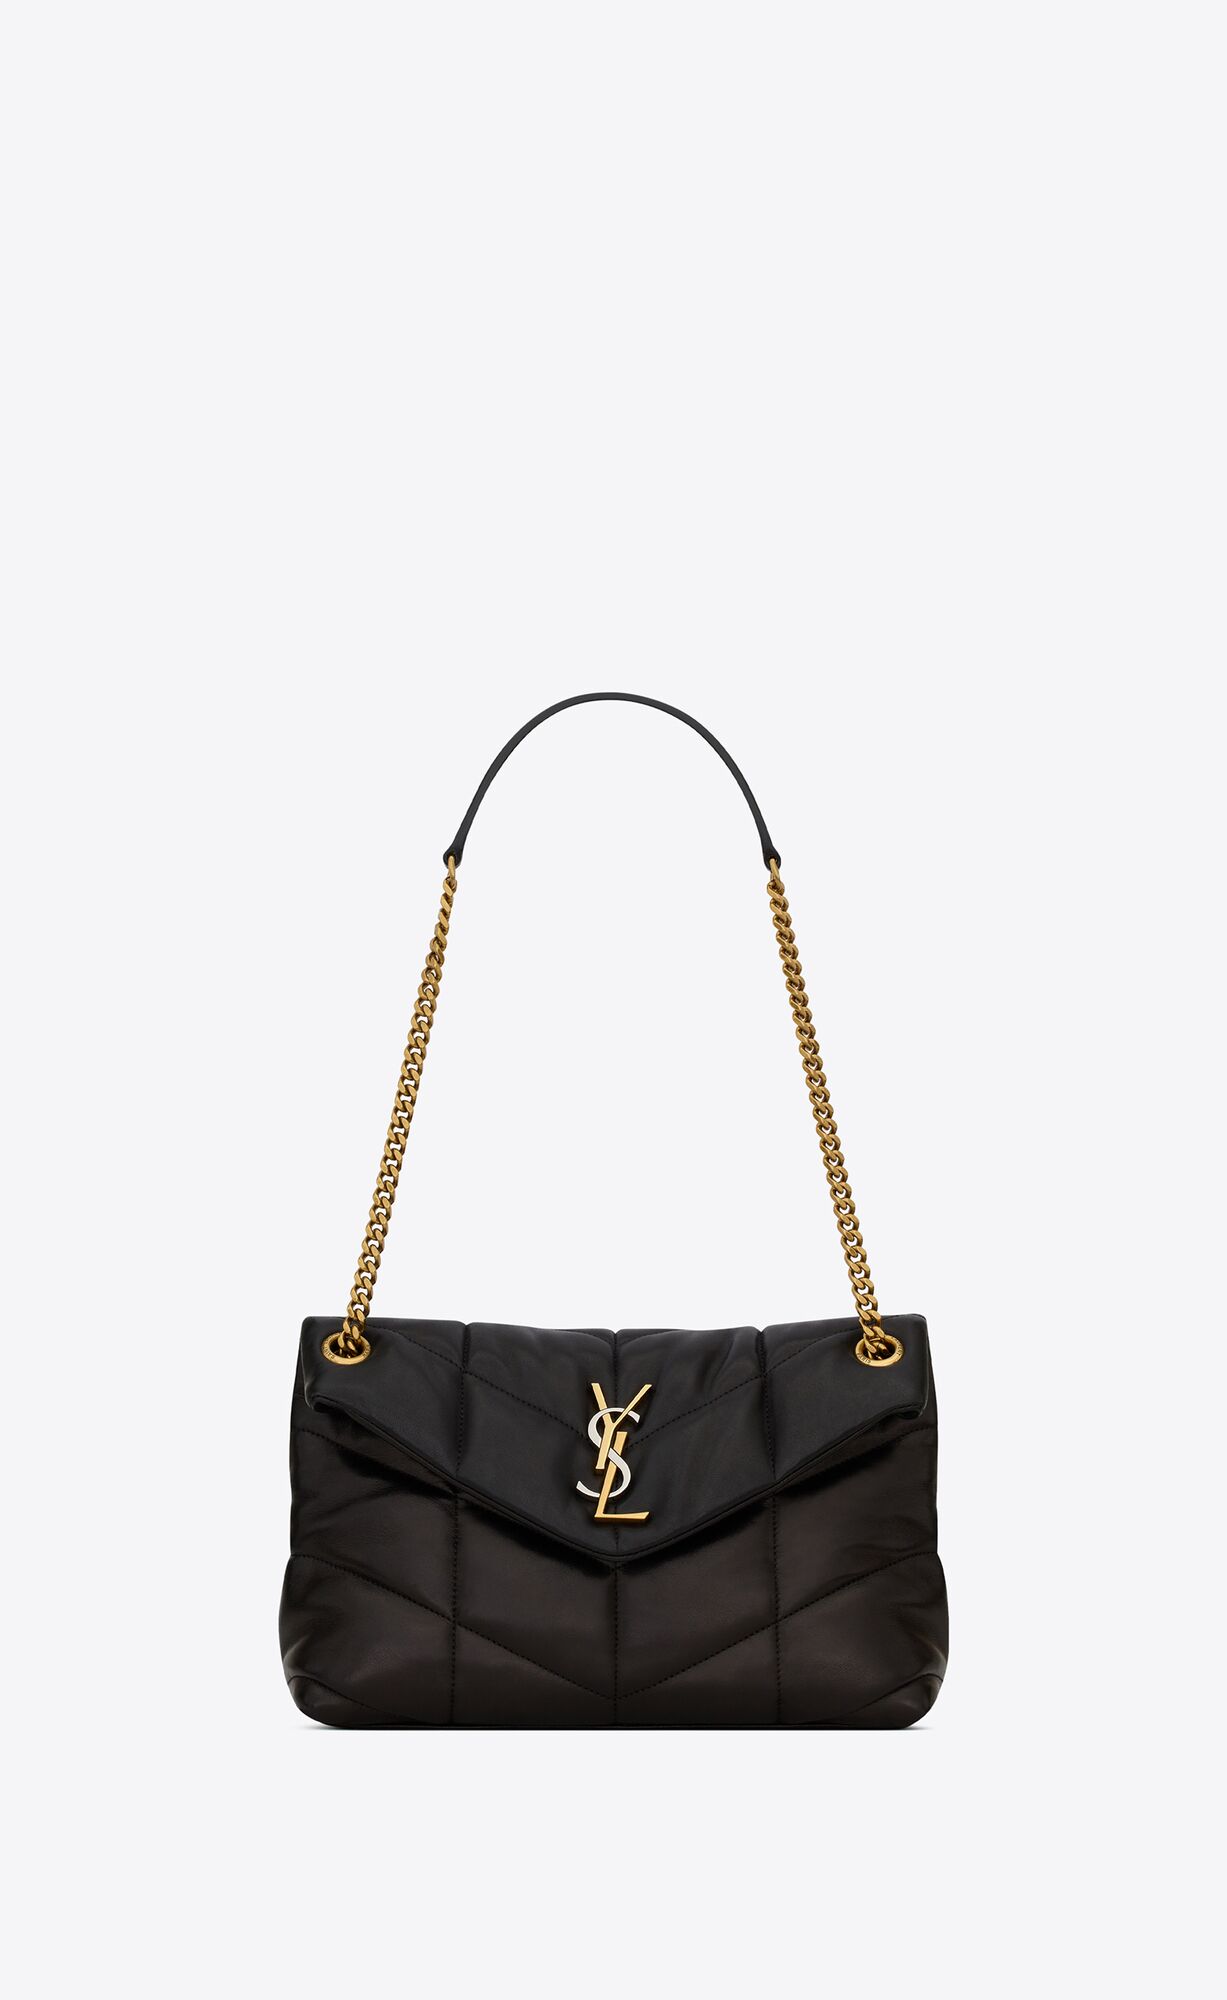 Puffer | Handbags for Women | Saint Laurent | YSL.com